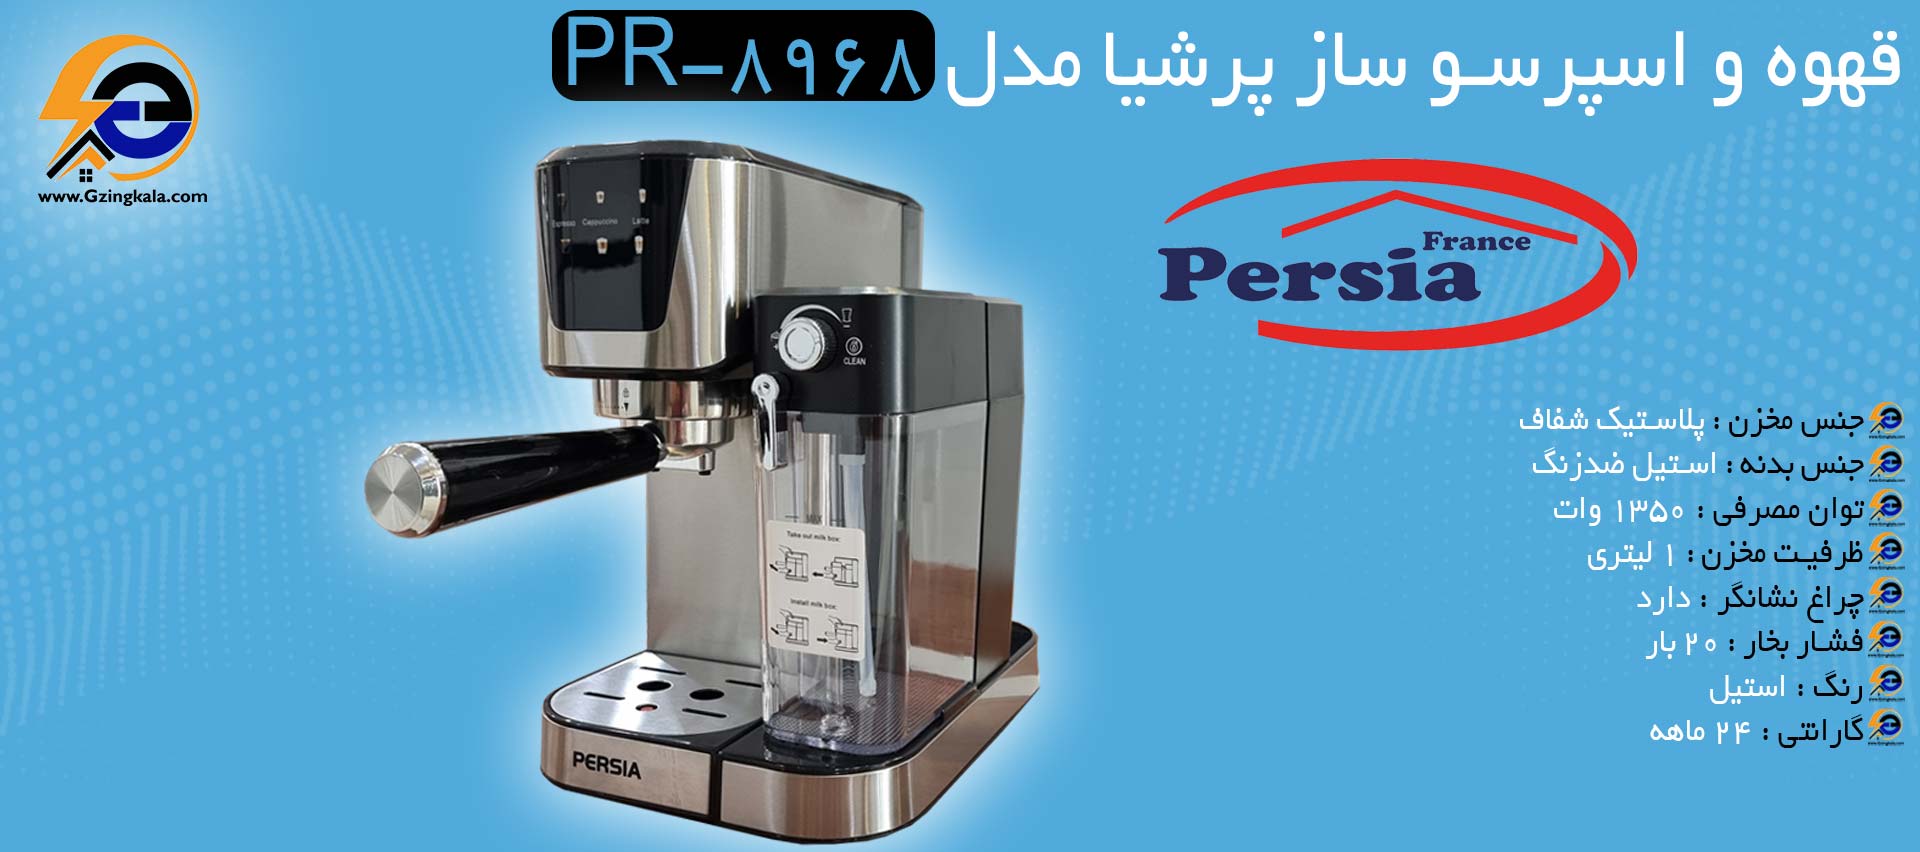 قهوه و اسپرسو ساز پرشیا مدل PR-8968